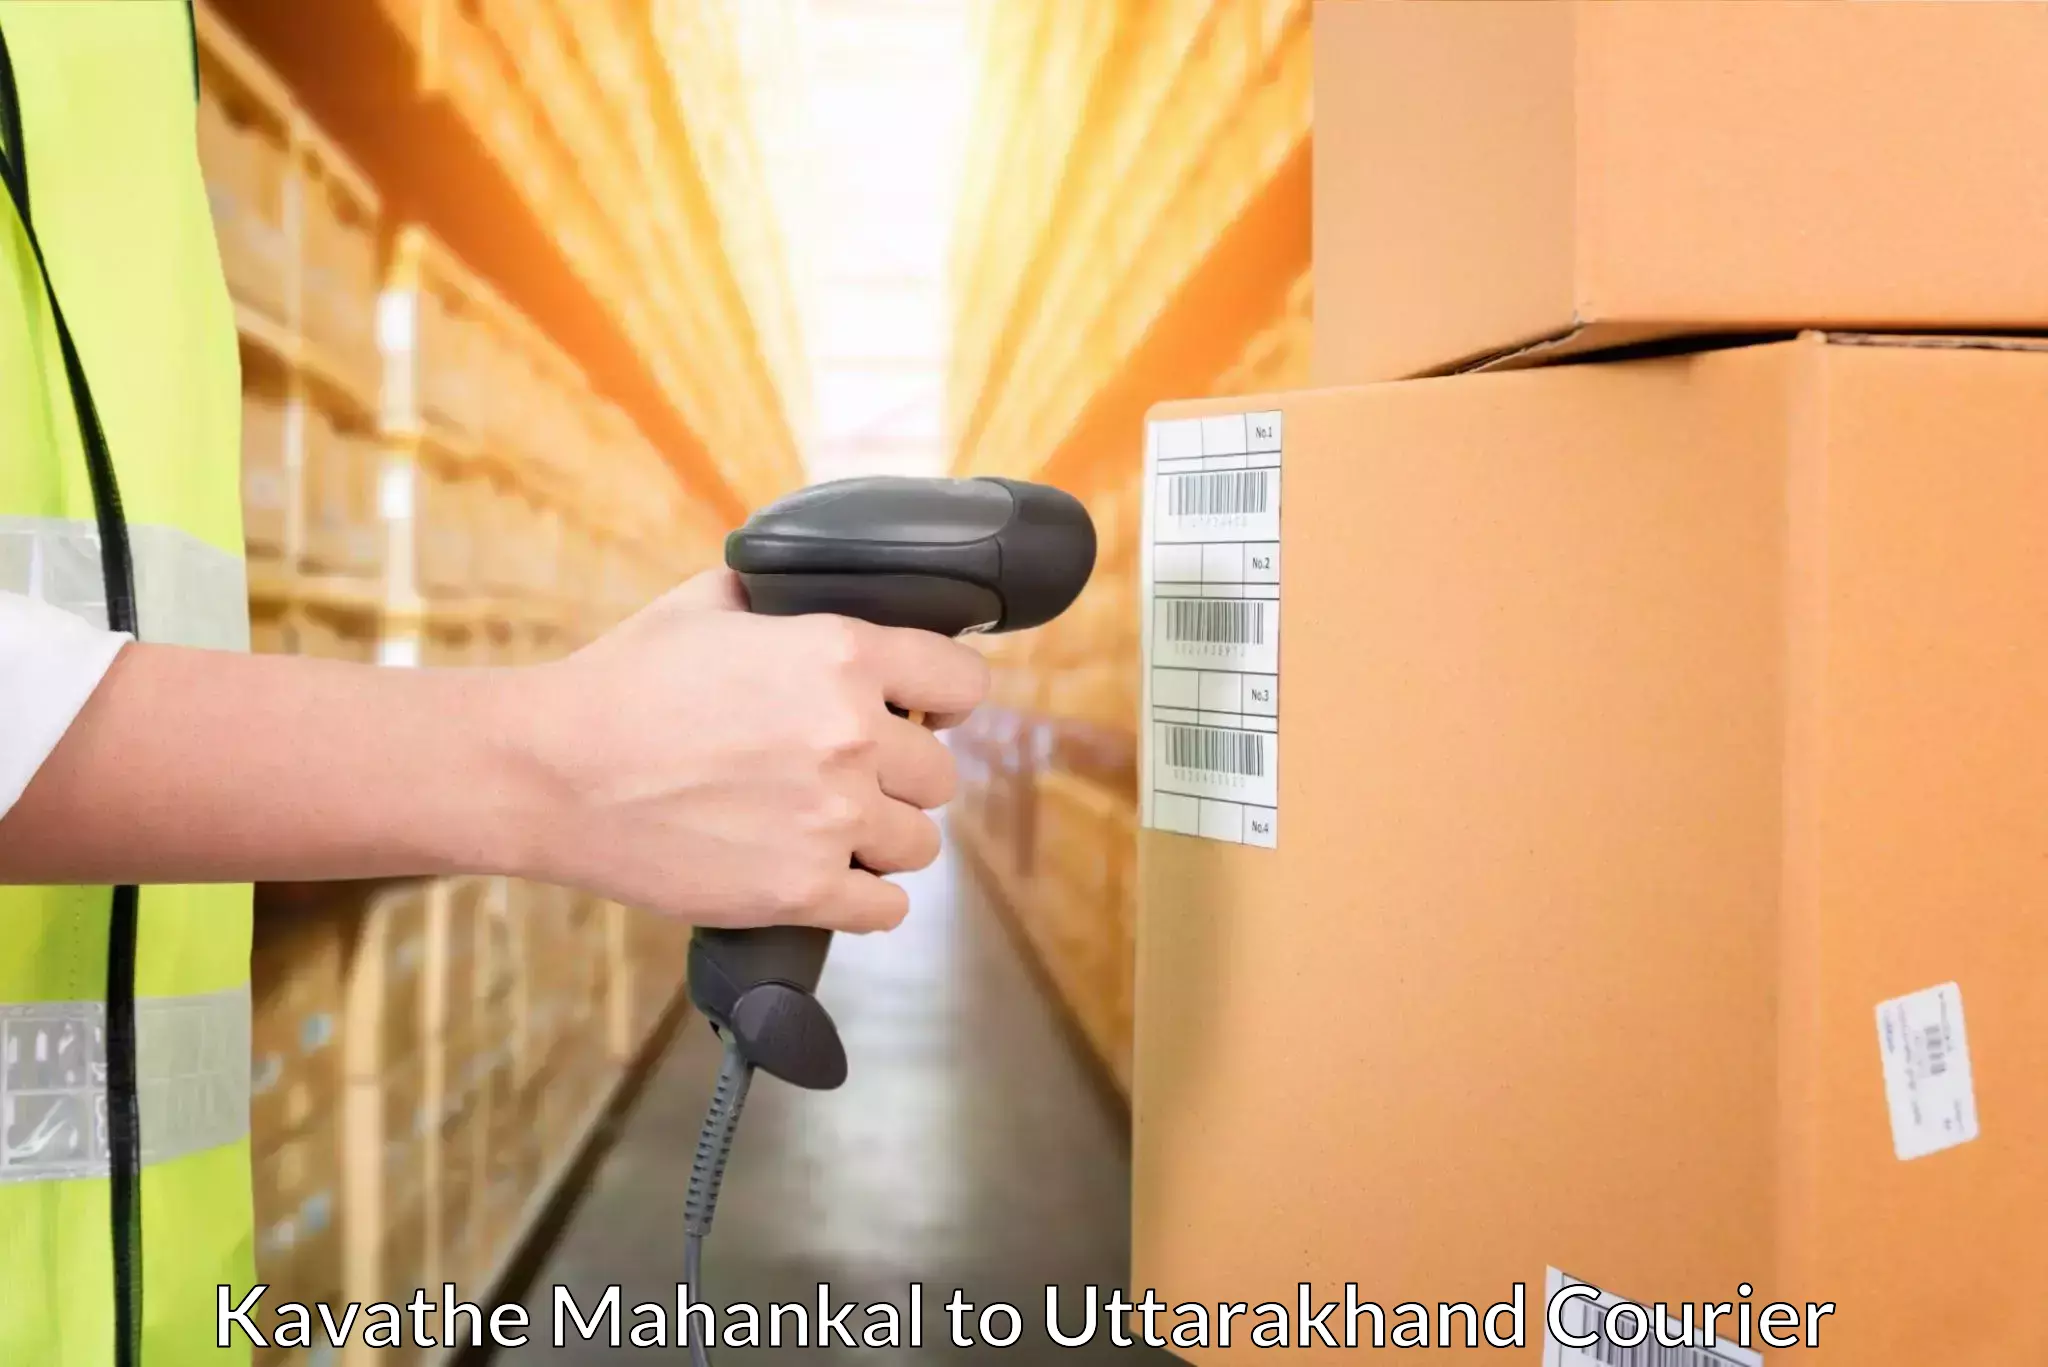 Global logistics network Kavathe Mahankal to Rishikesh